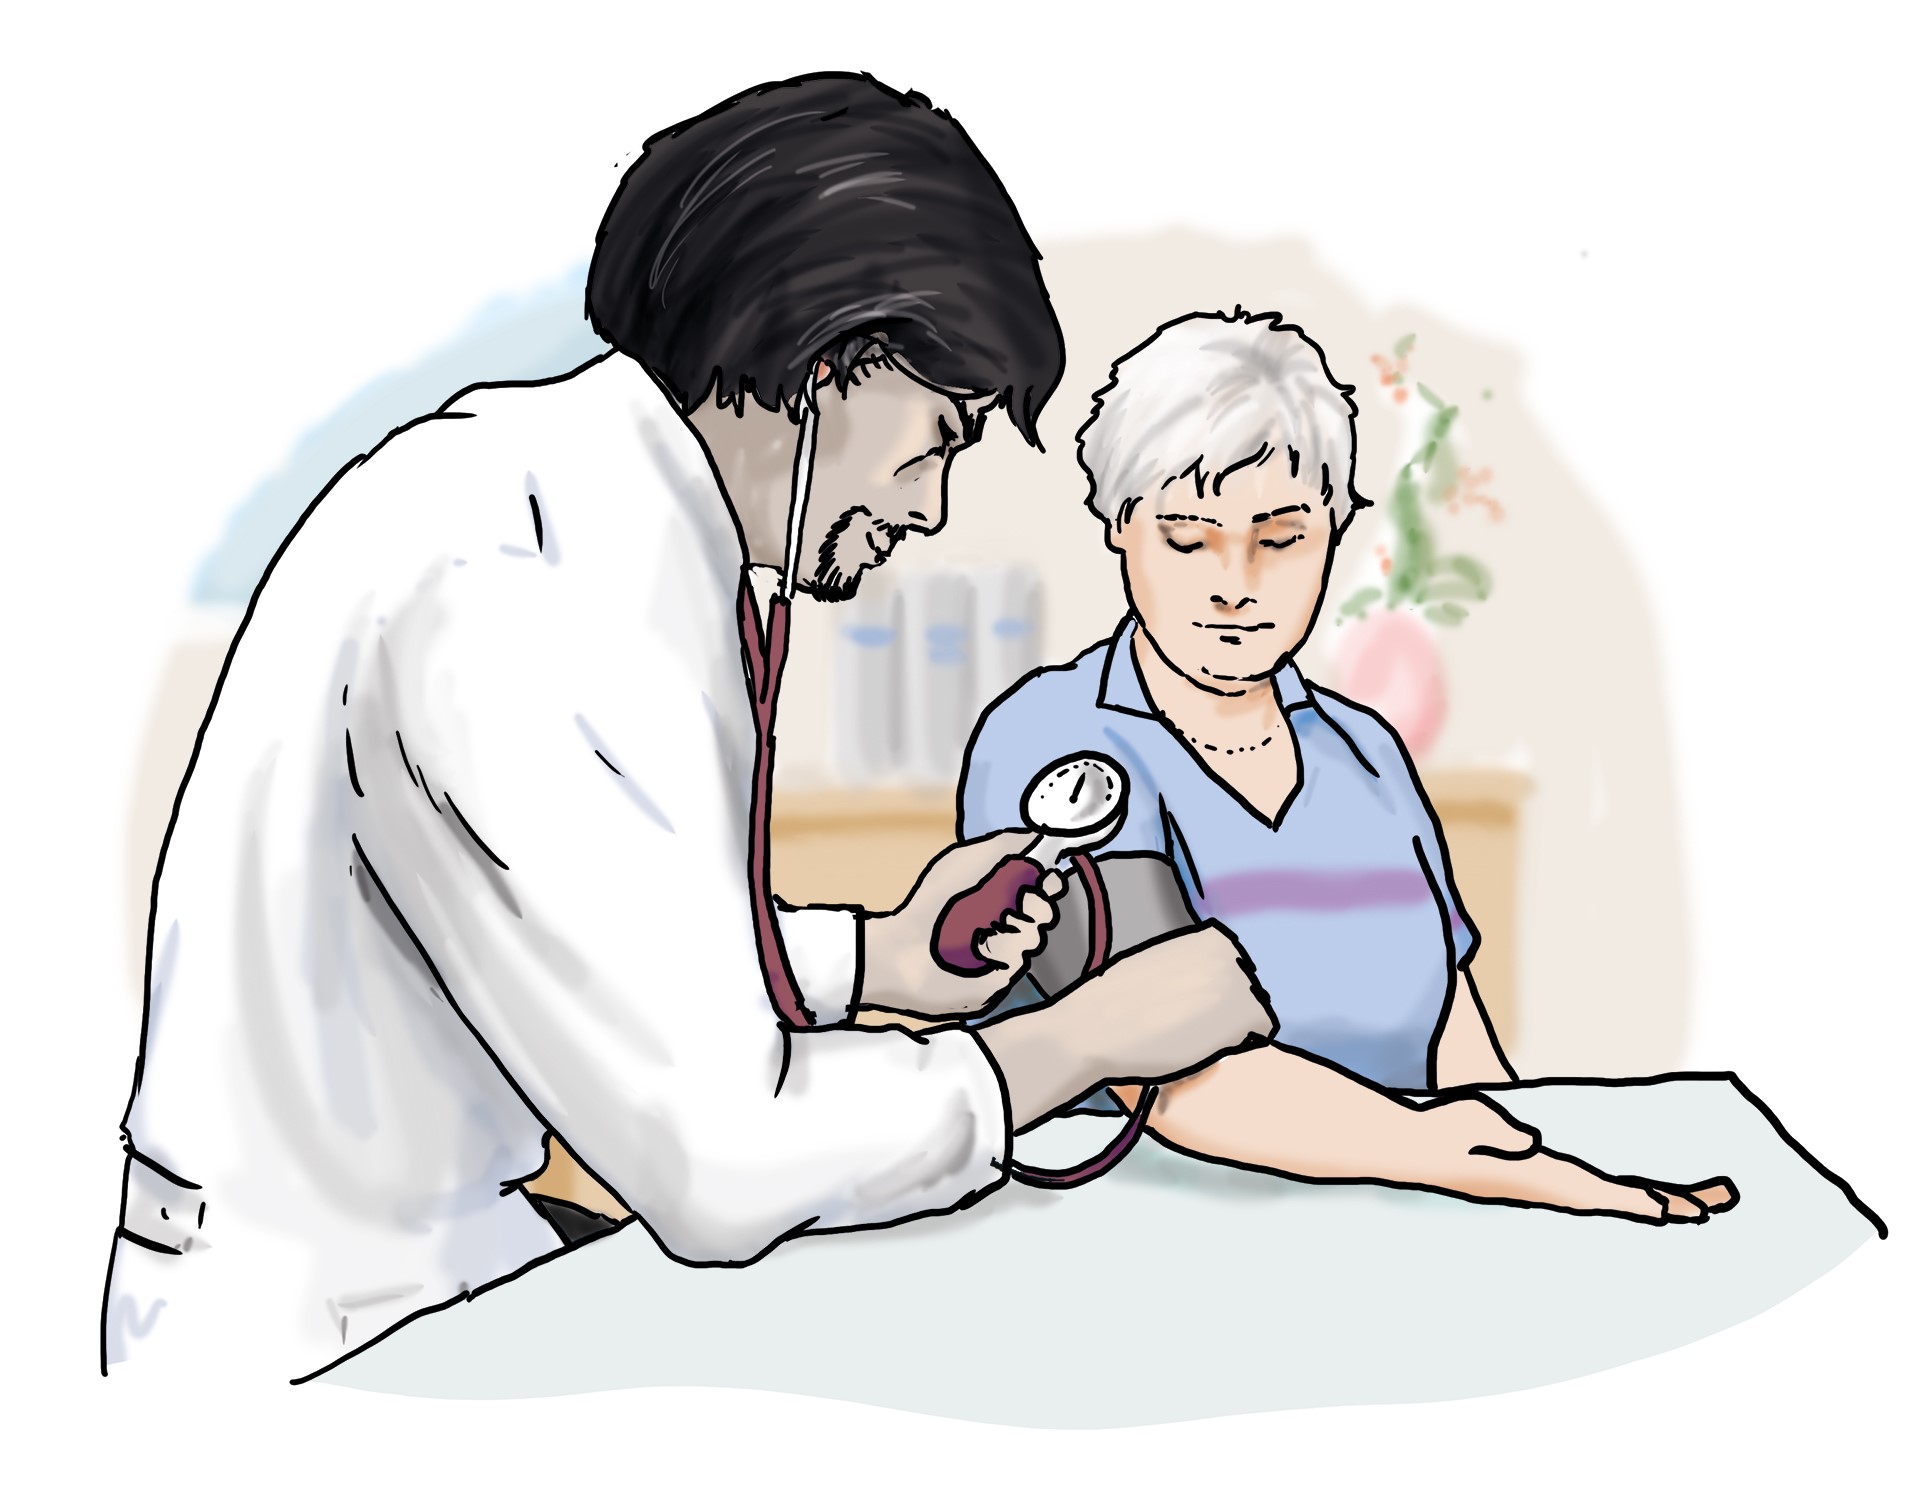 Ein Arzt misst den Blutdruck einer Patientin.